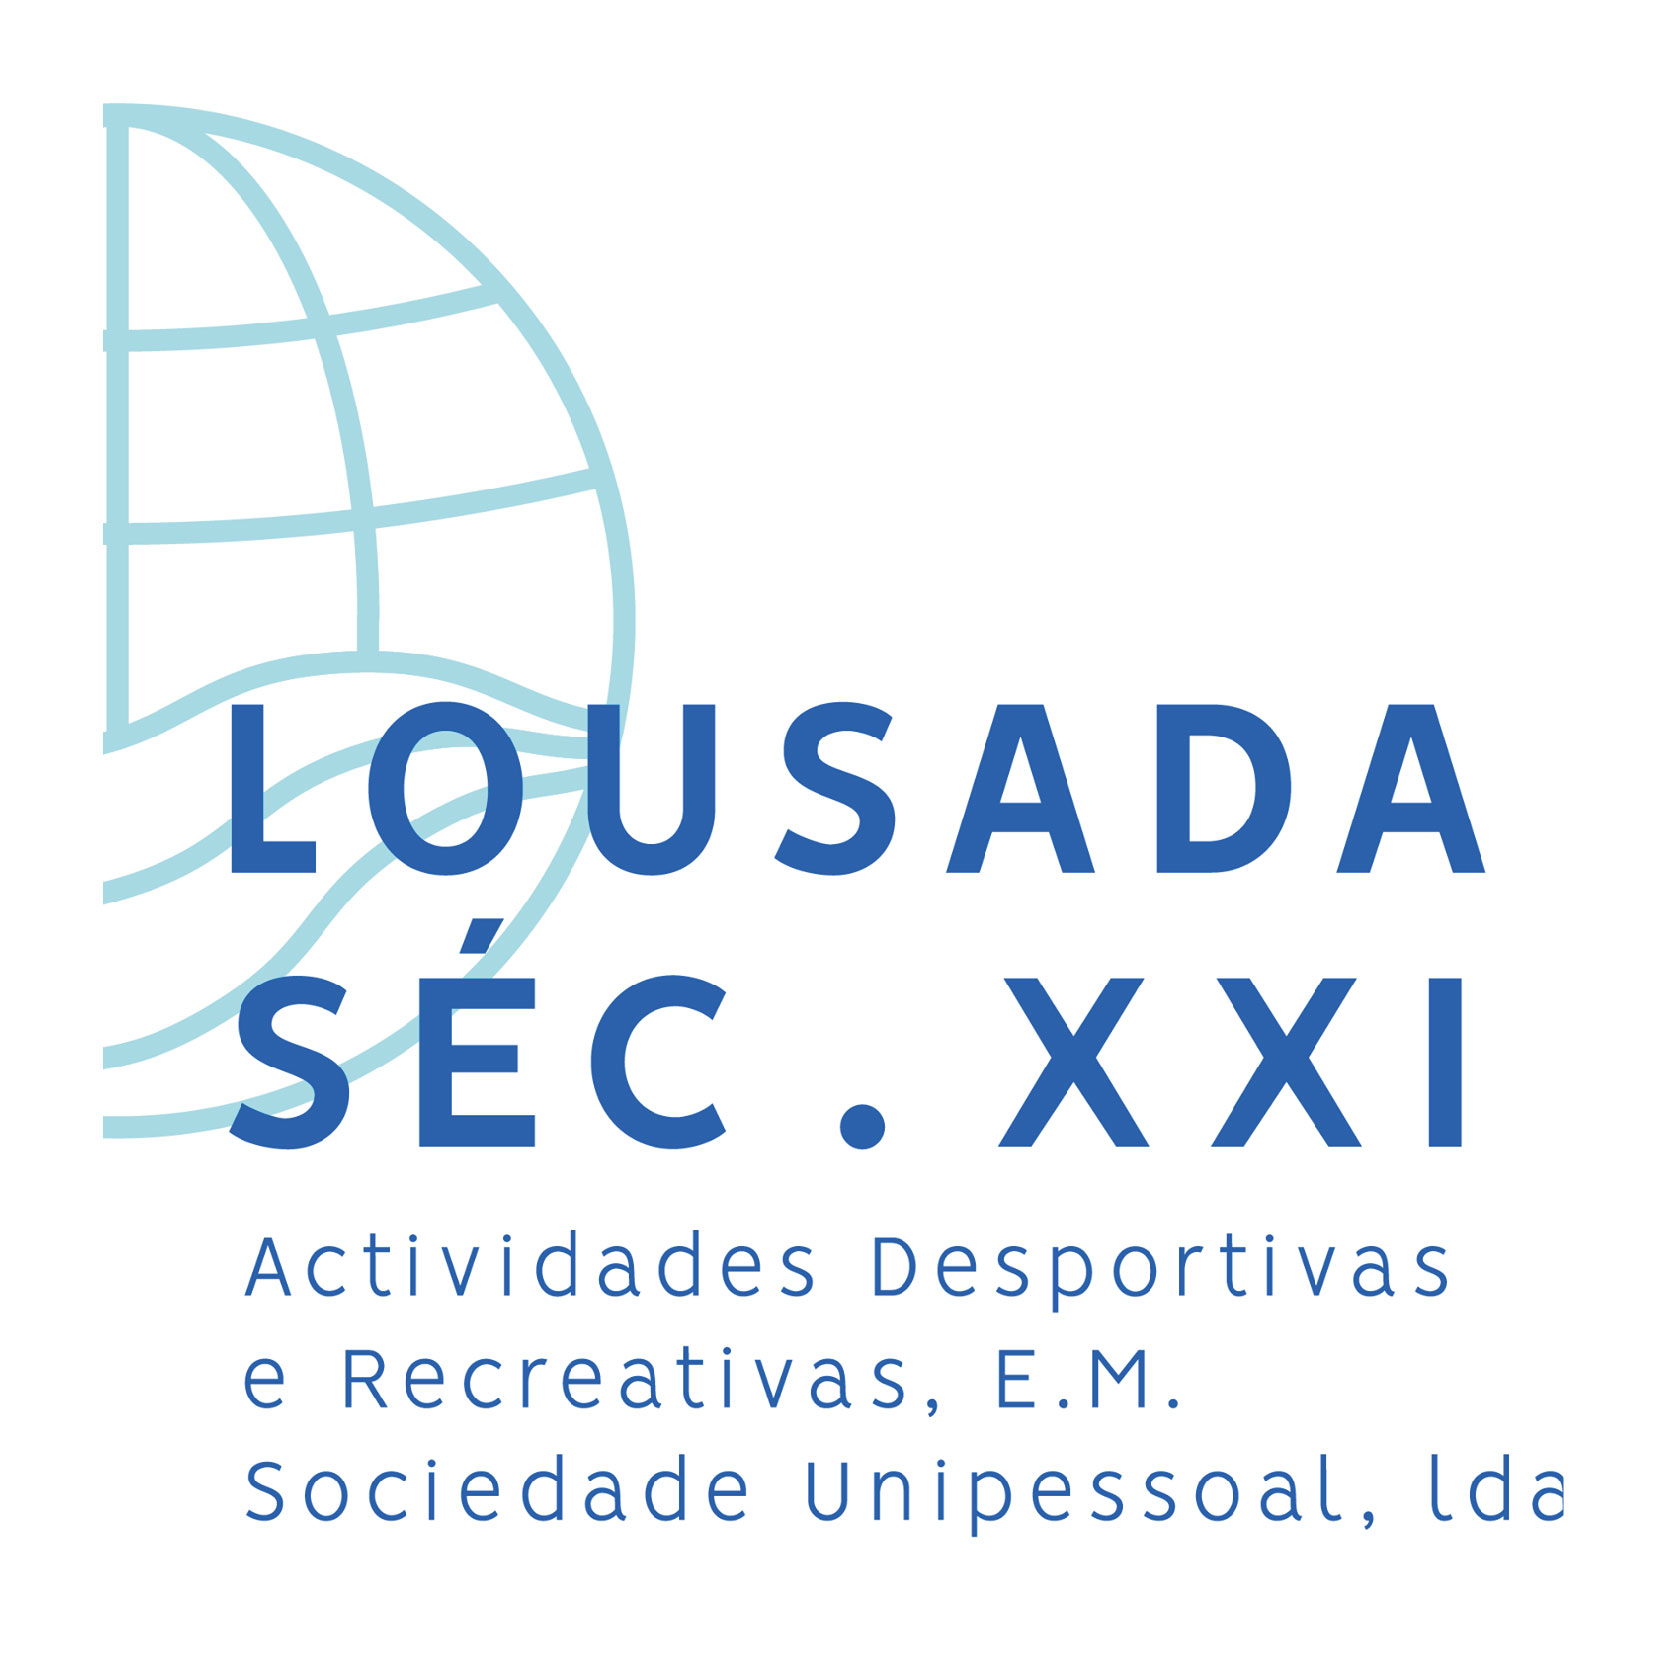 Logotipo-Lousada Século XXI - Actividades Desportivas e Recreativas, E.M.